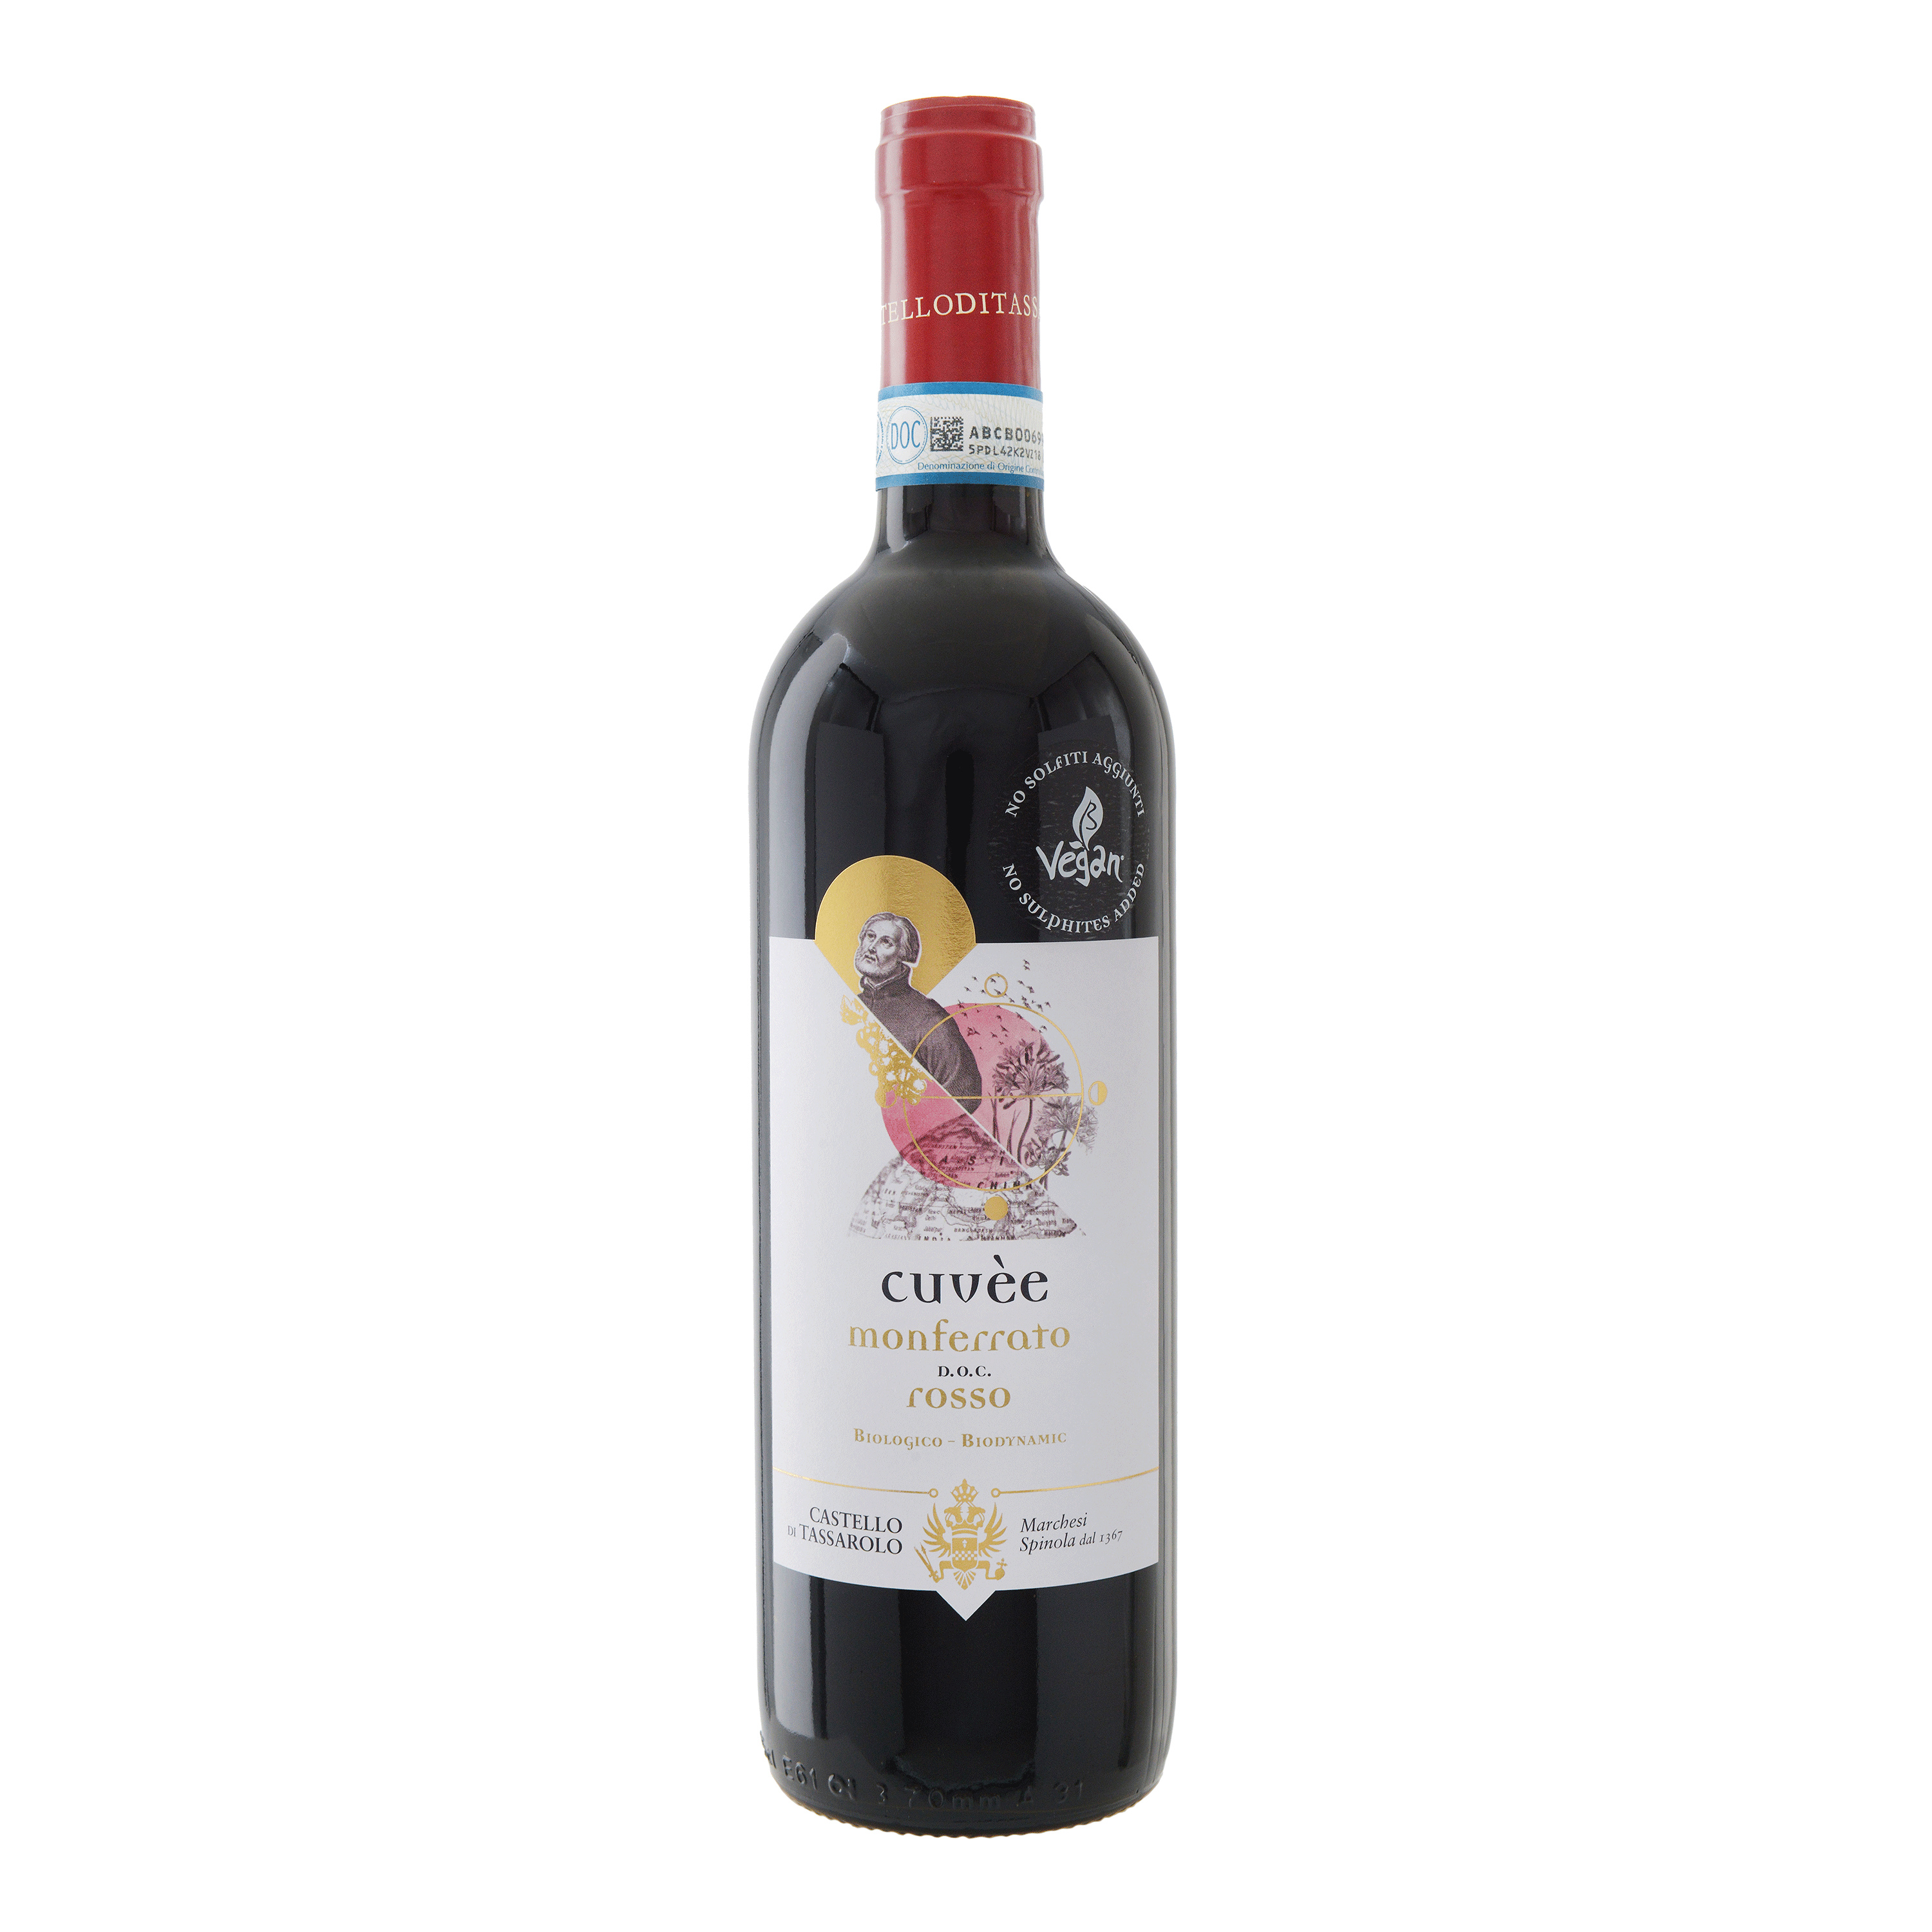 Cuvée Monferrato DOC (Italy) 紅酒